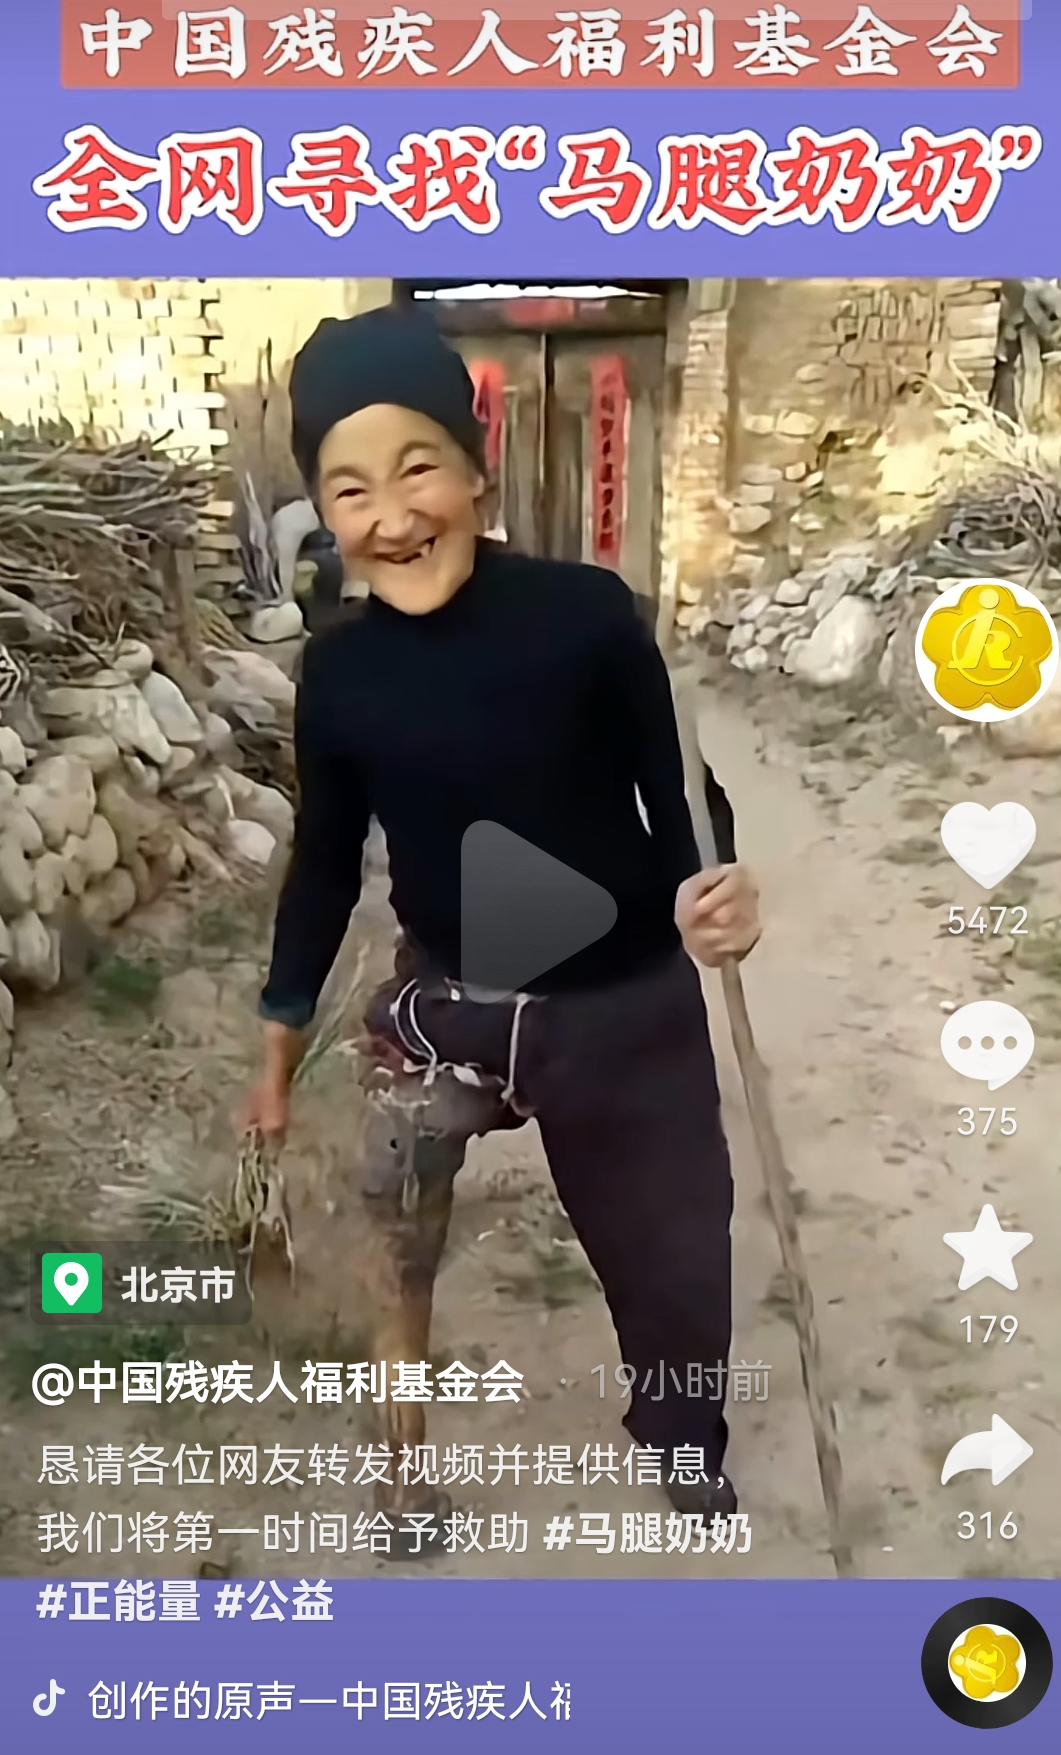 蔚县民政局回应“马腿”奶奶网上视频:她家还行 不喜欢用新假肢